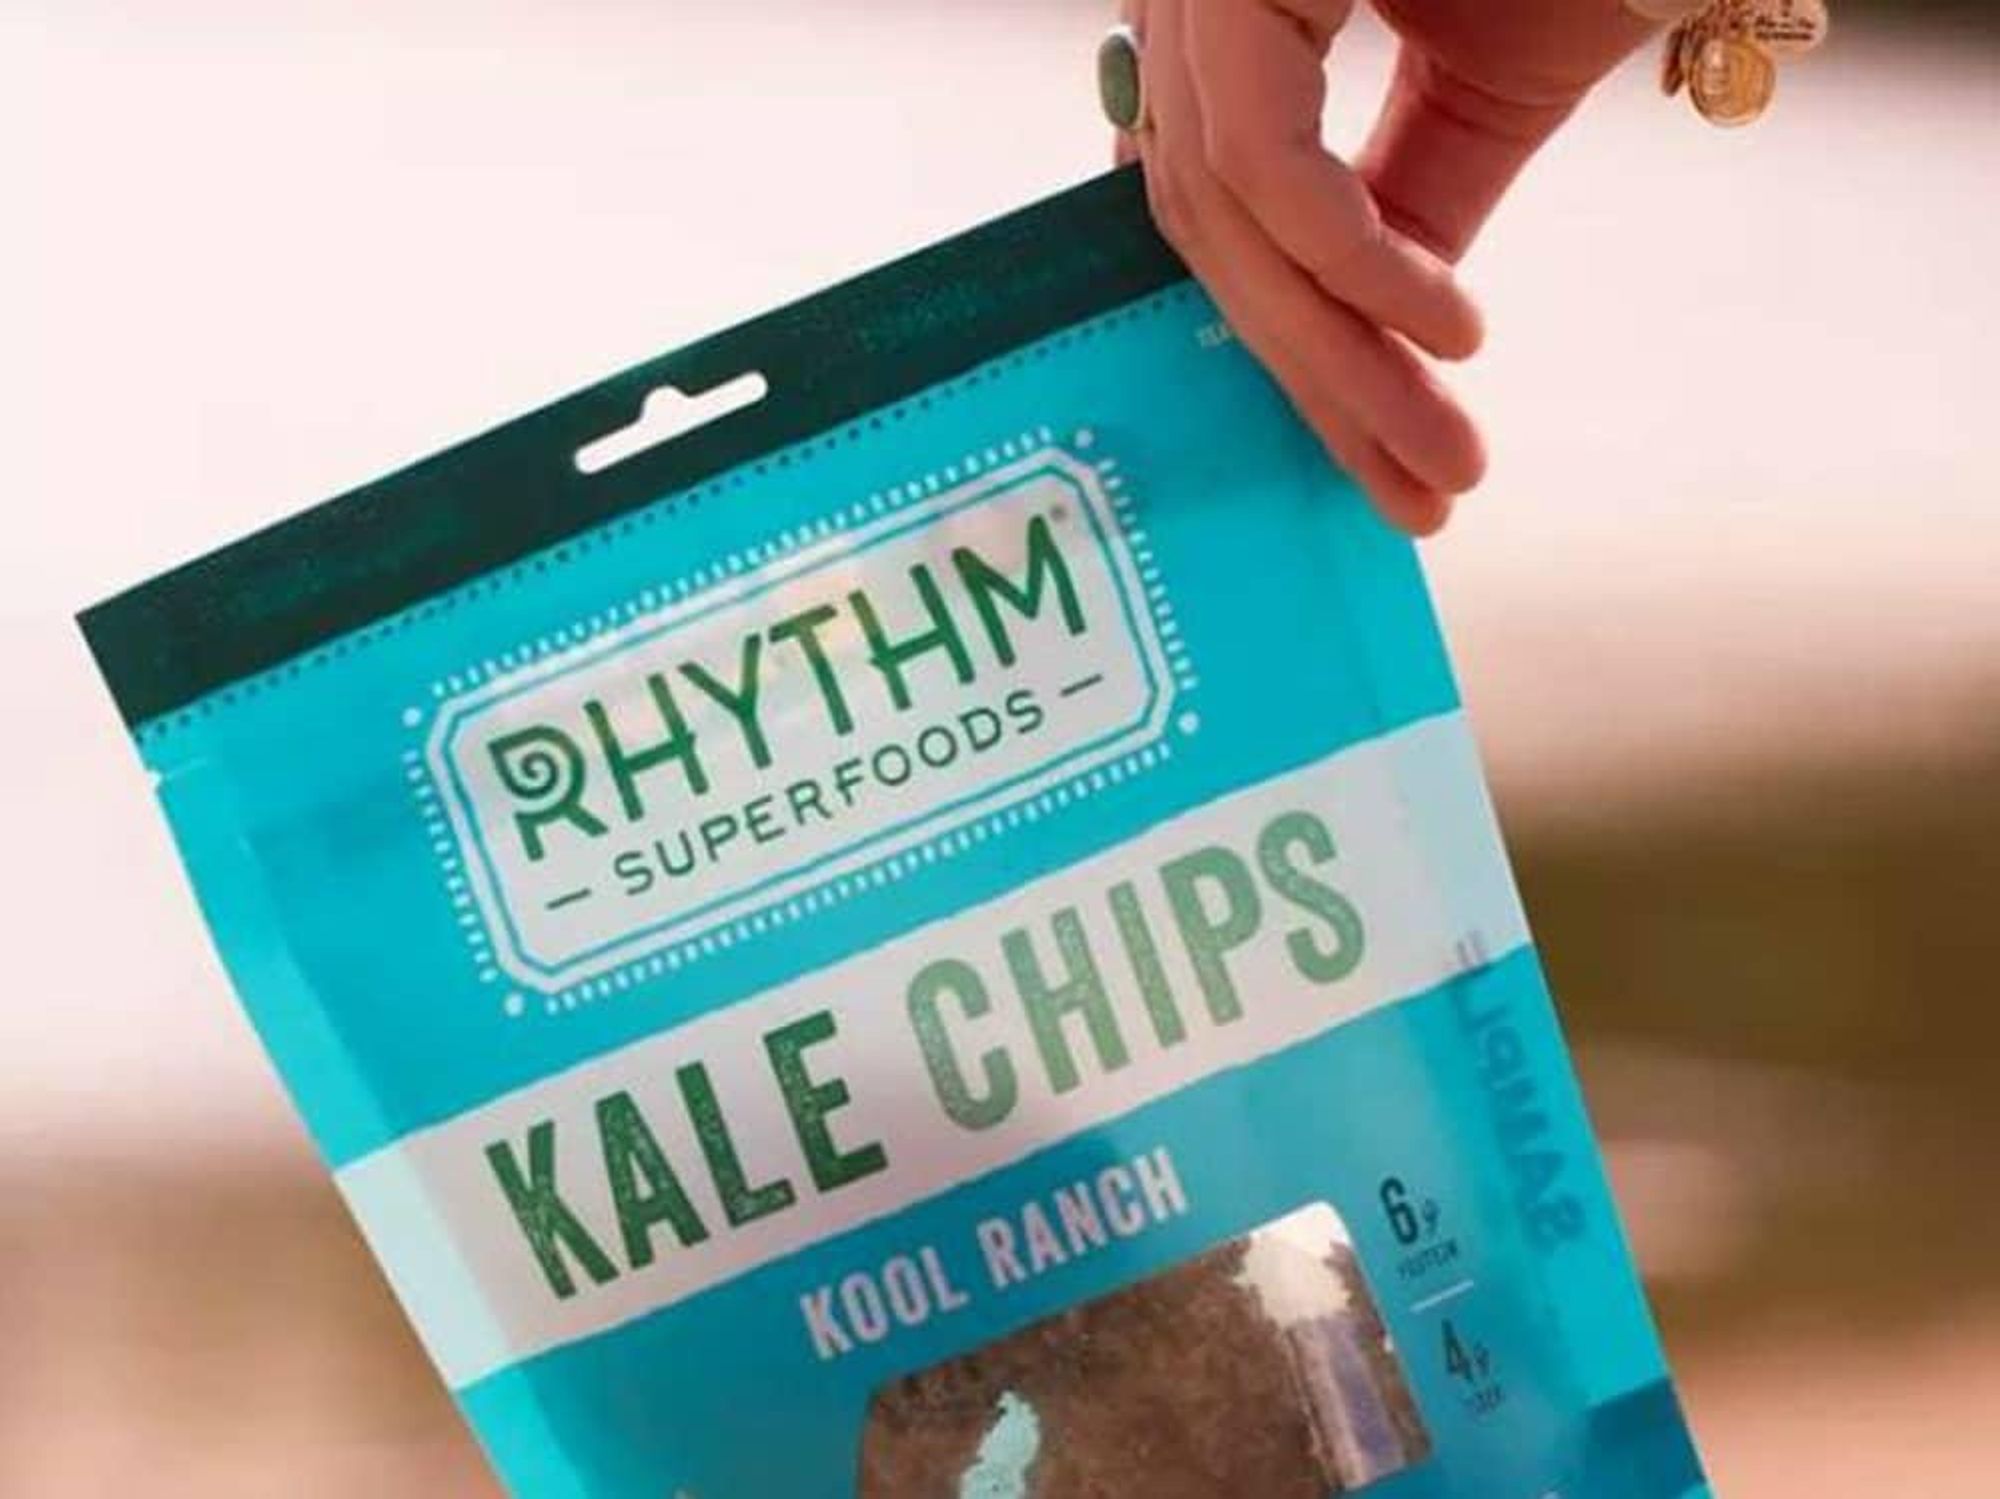 Rhythm Superfoods kale chips ranch flavor bag